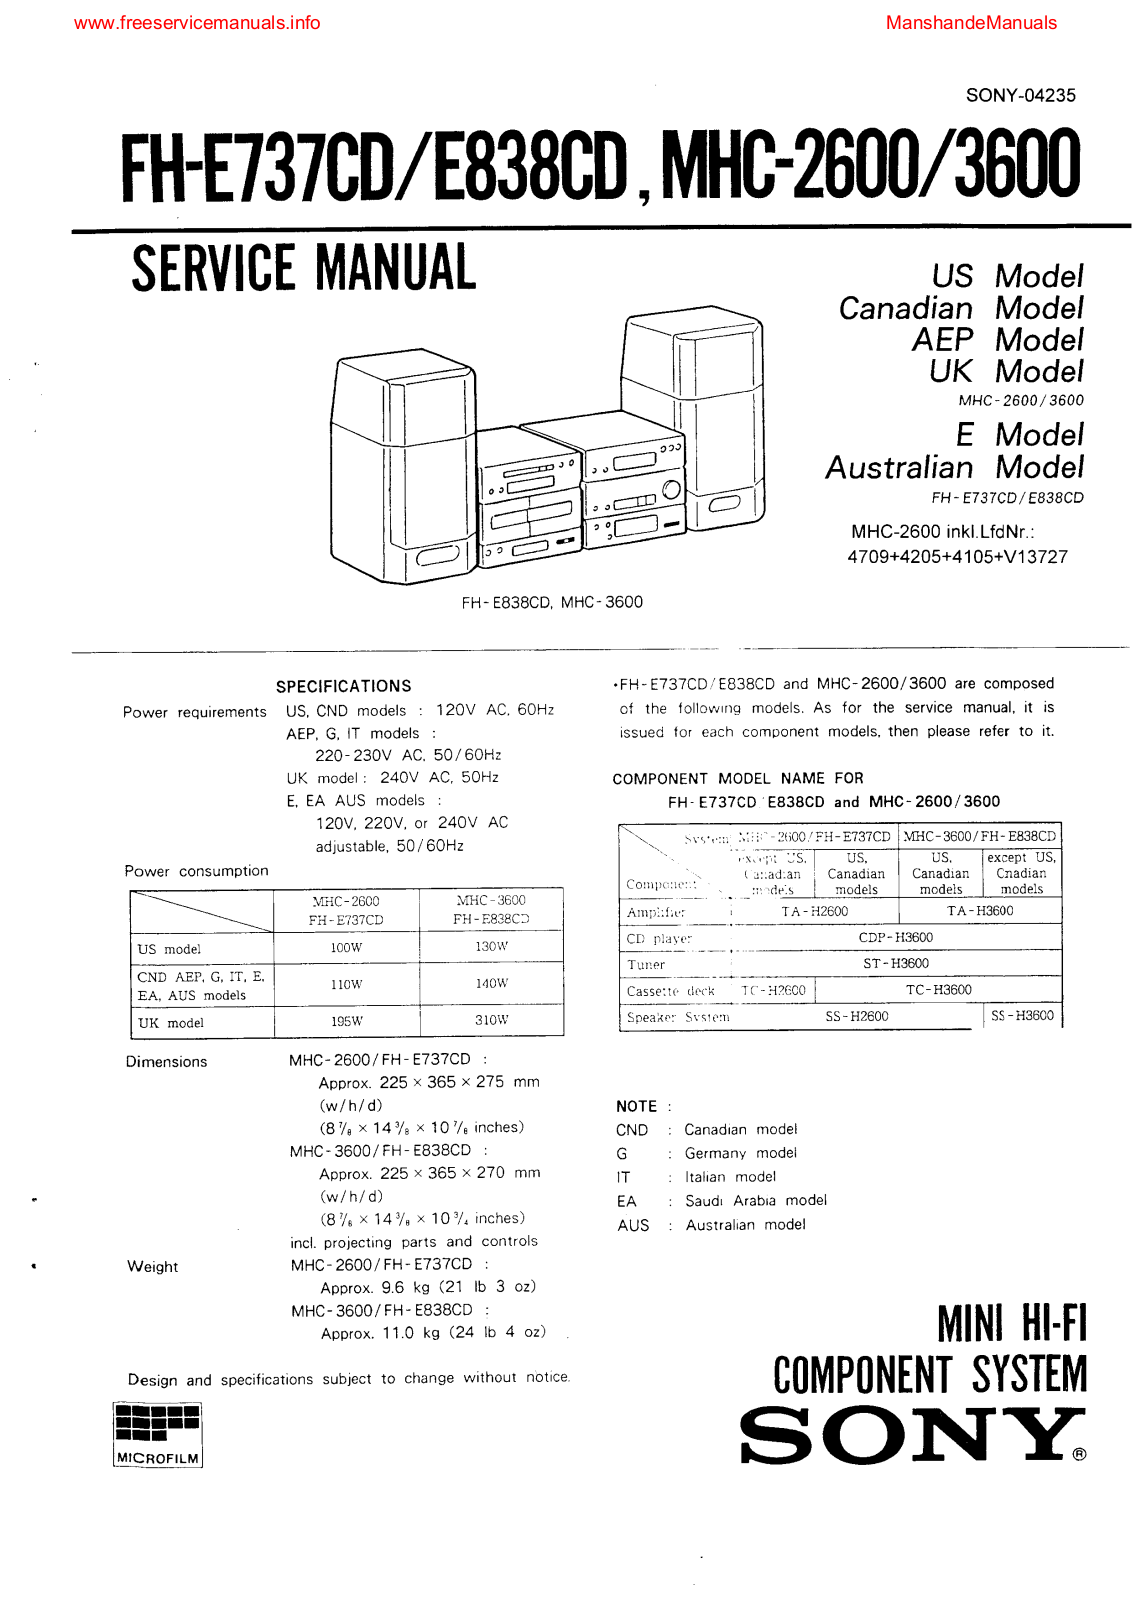 SONY FH-E838CD, FH-E737CD, MHC-2600, MHC-3600 Service Manual